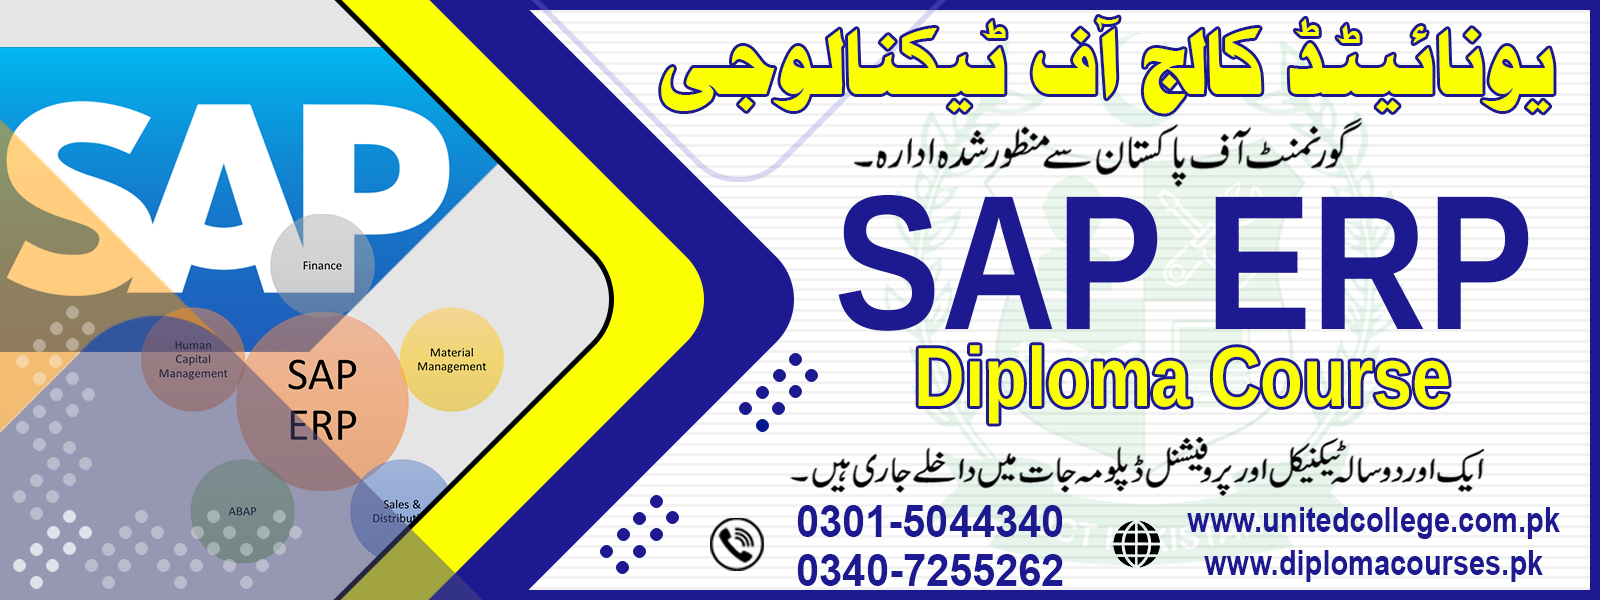 SAP ERP COURSE IN RAWALPINDI ISLAMABAD PAKISTAN